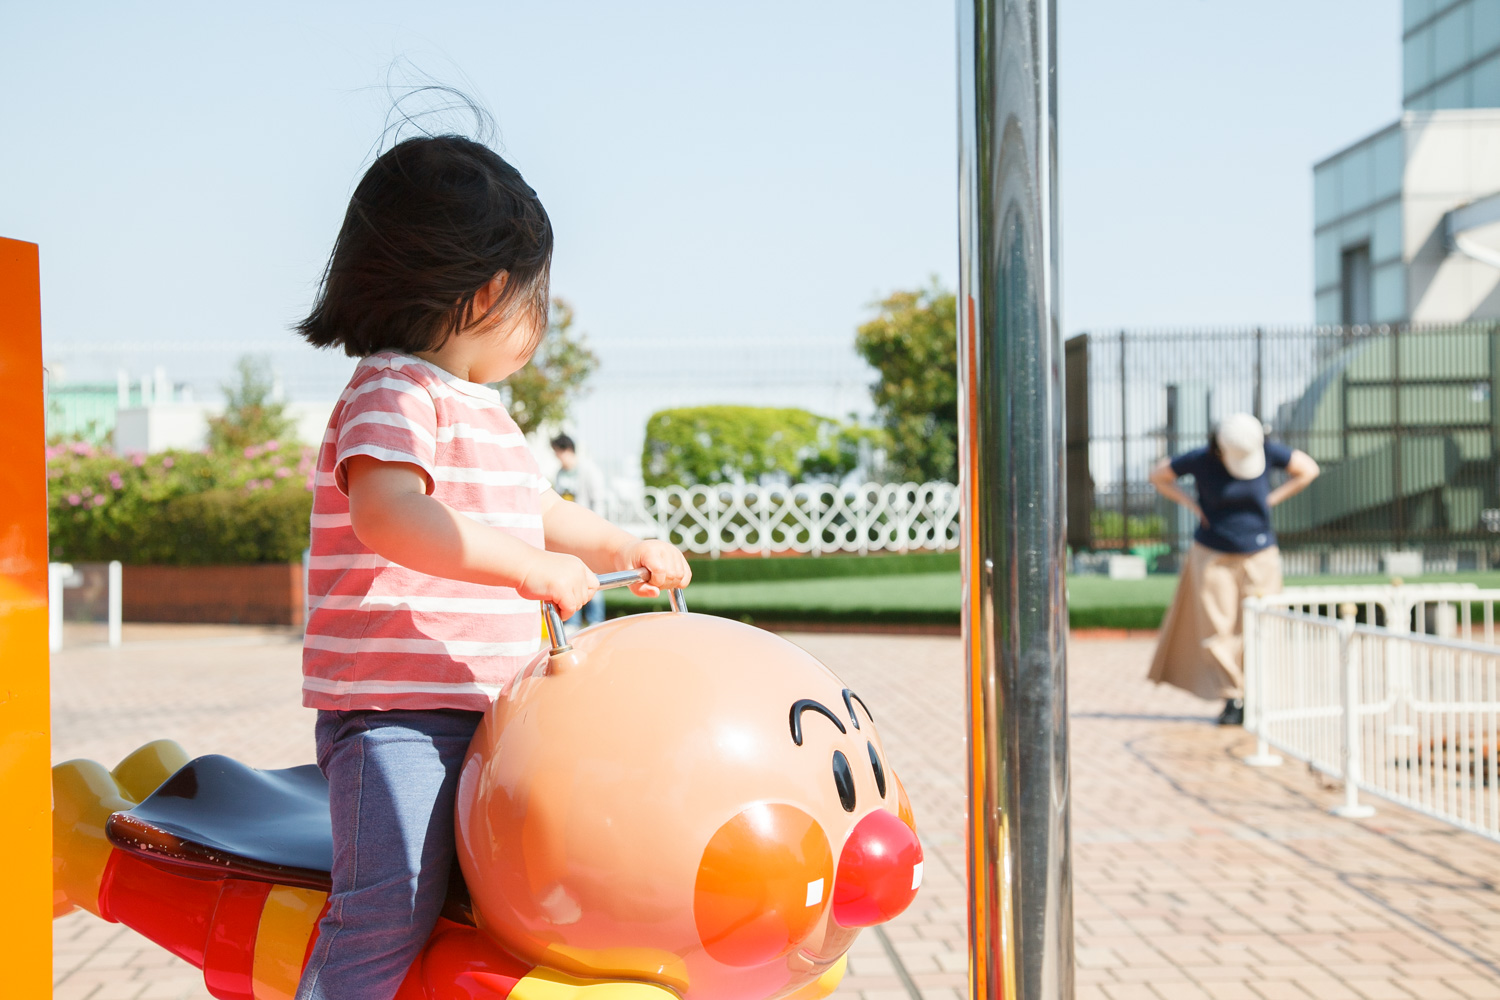 乗り物はどれも100円～300円くらいで乗ることができます。どれも小さな子どもでも安心して乗ることができる乗り物なので、安心して遊ばせてあげられます。